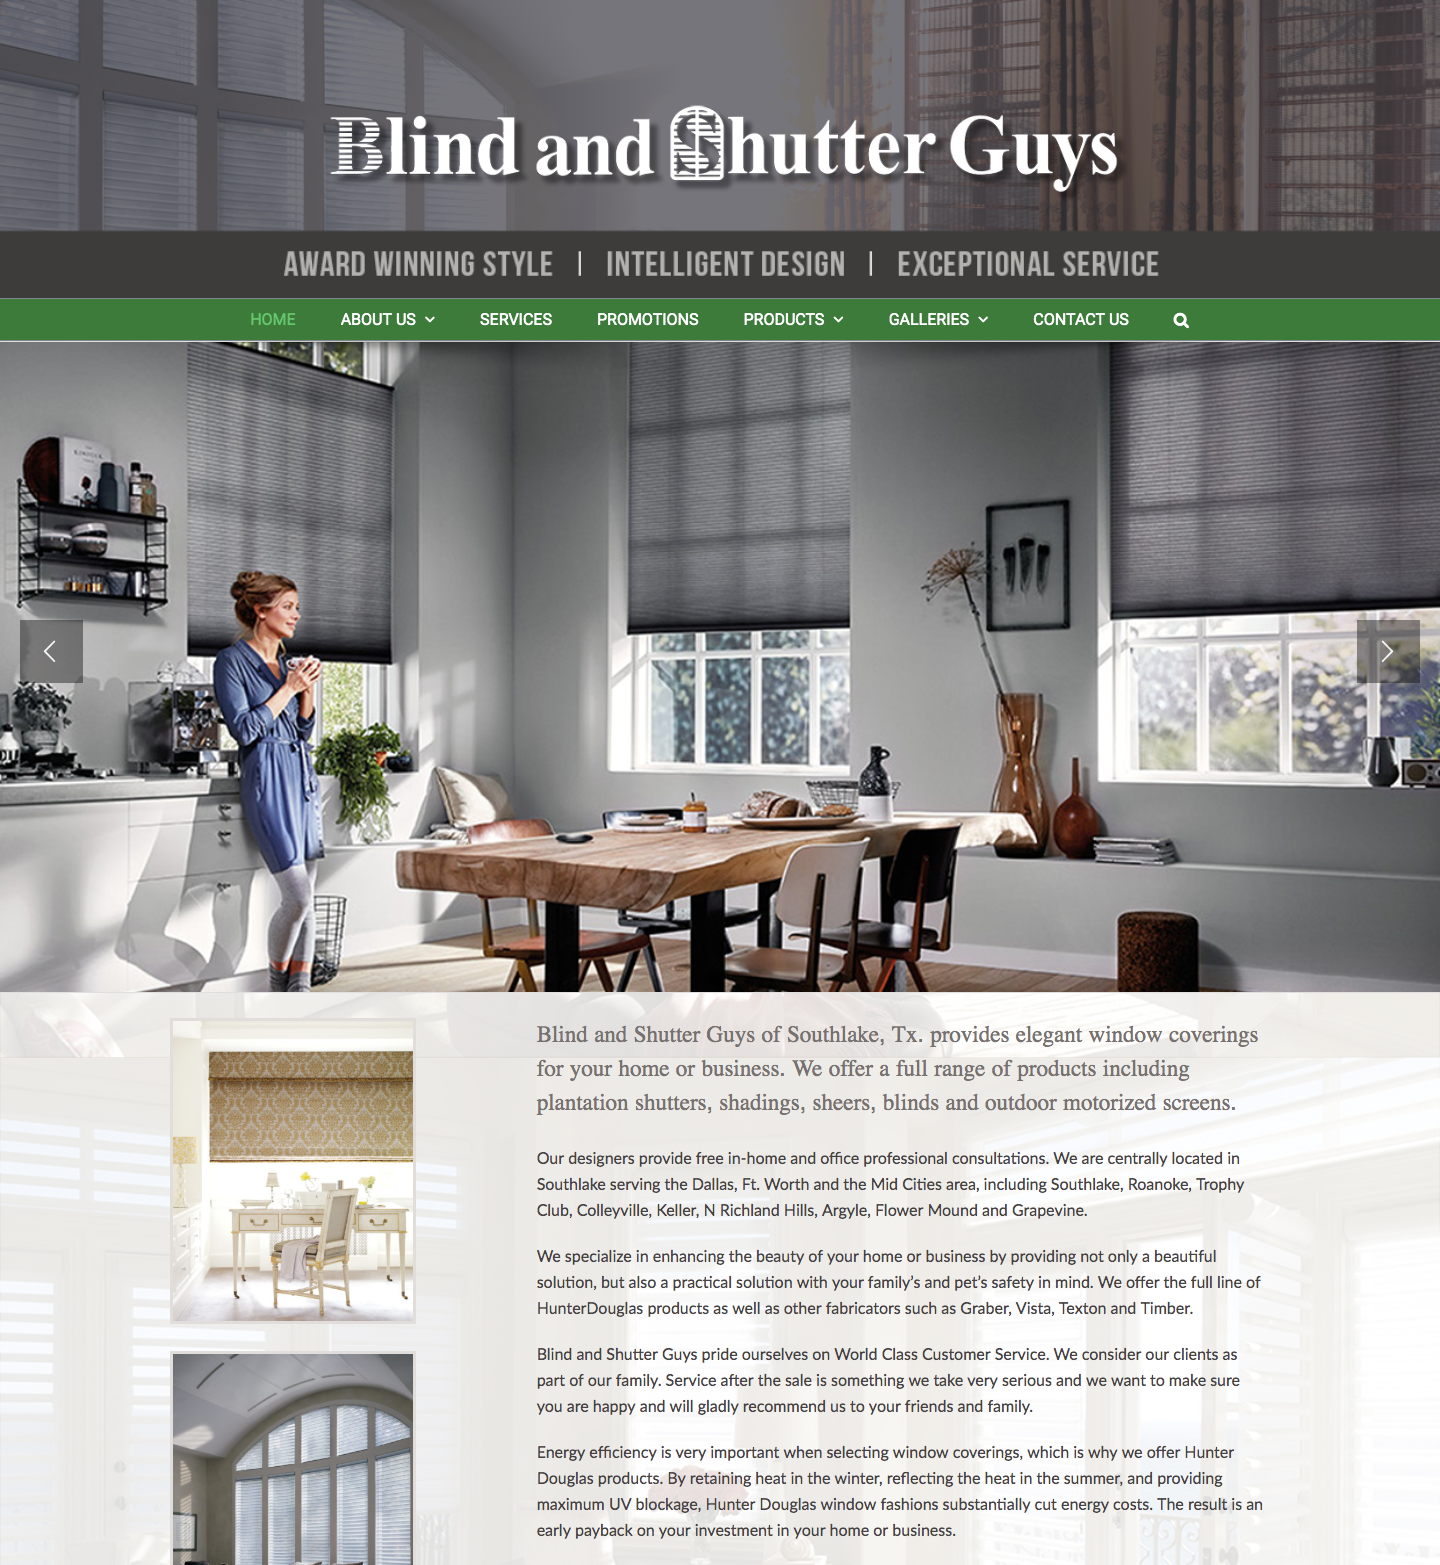 Blind and Shutter Guys custom website design